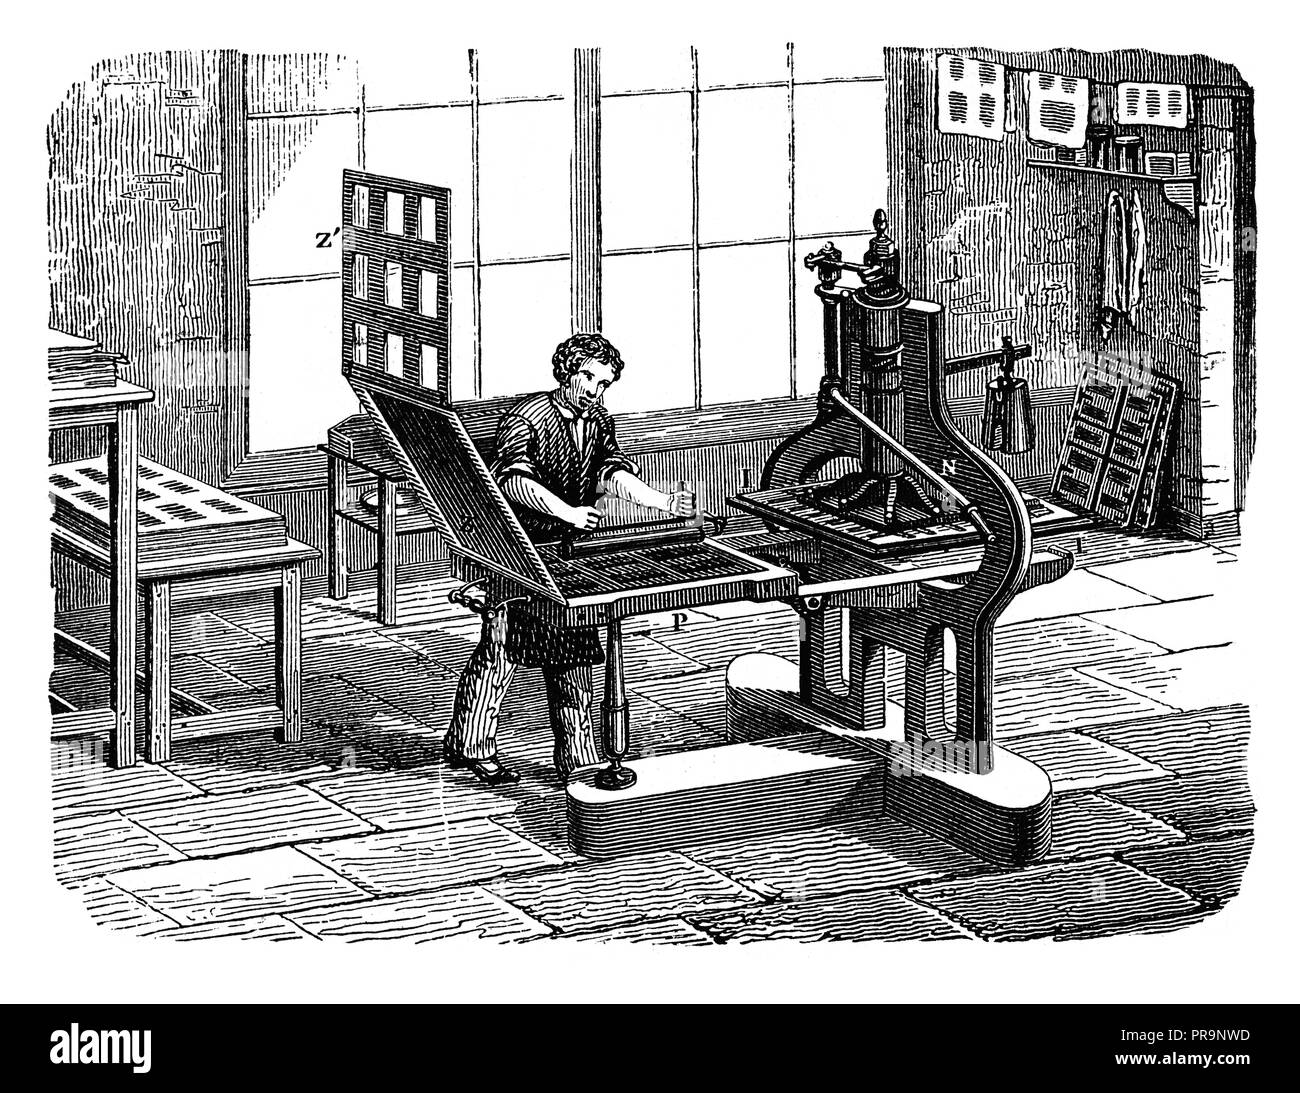 19-ème siècle illustration de presse Stanhope, inventé par le scientifique britannique Charles Stanhope c. 18e siècle. Publié dans Novoveki znanos Izumi u Banque D'Images